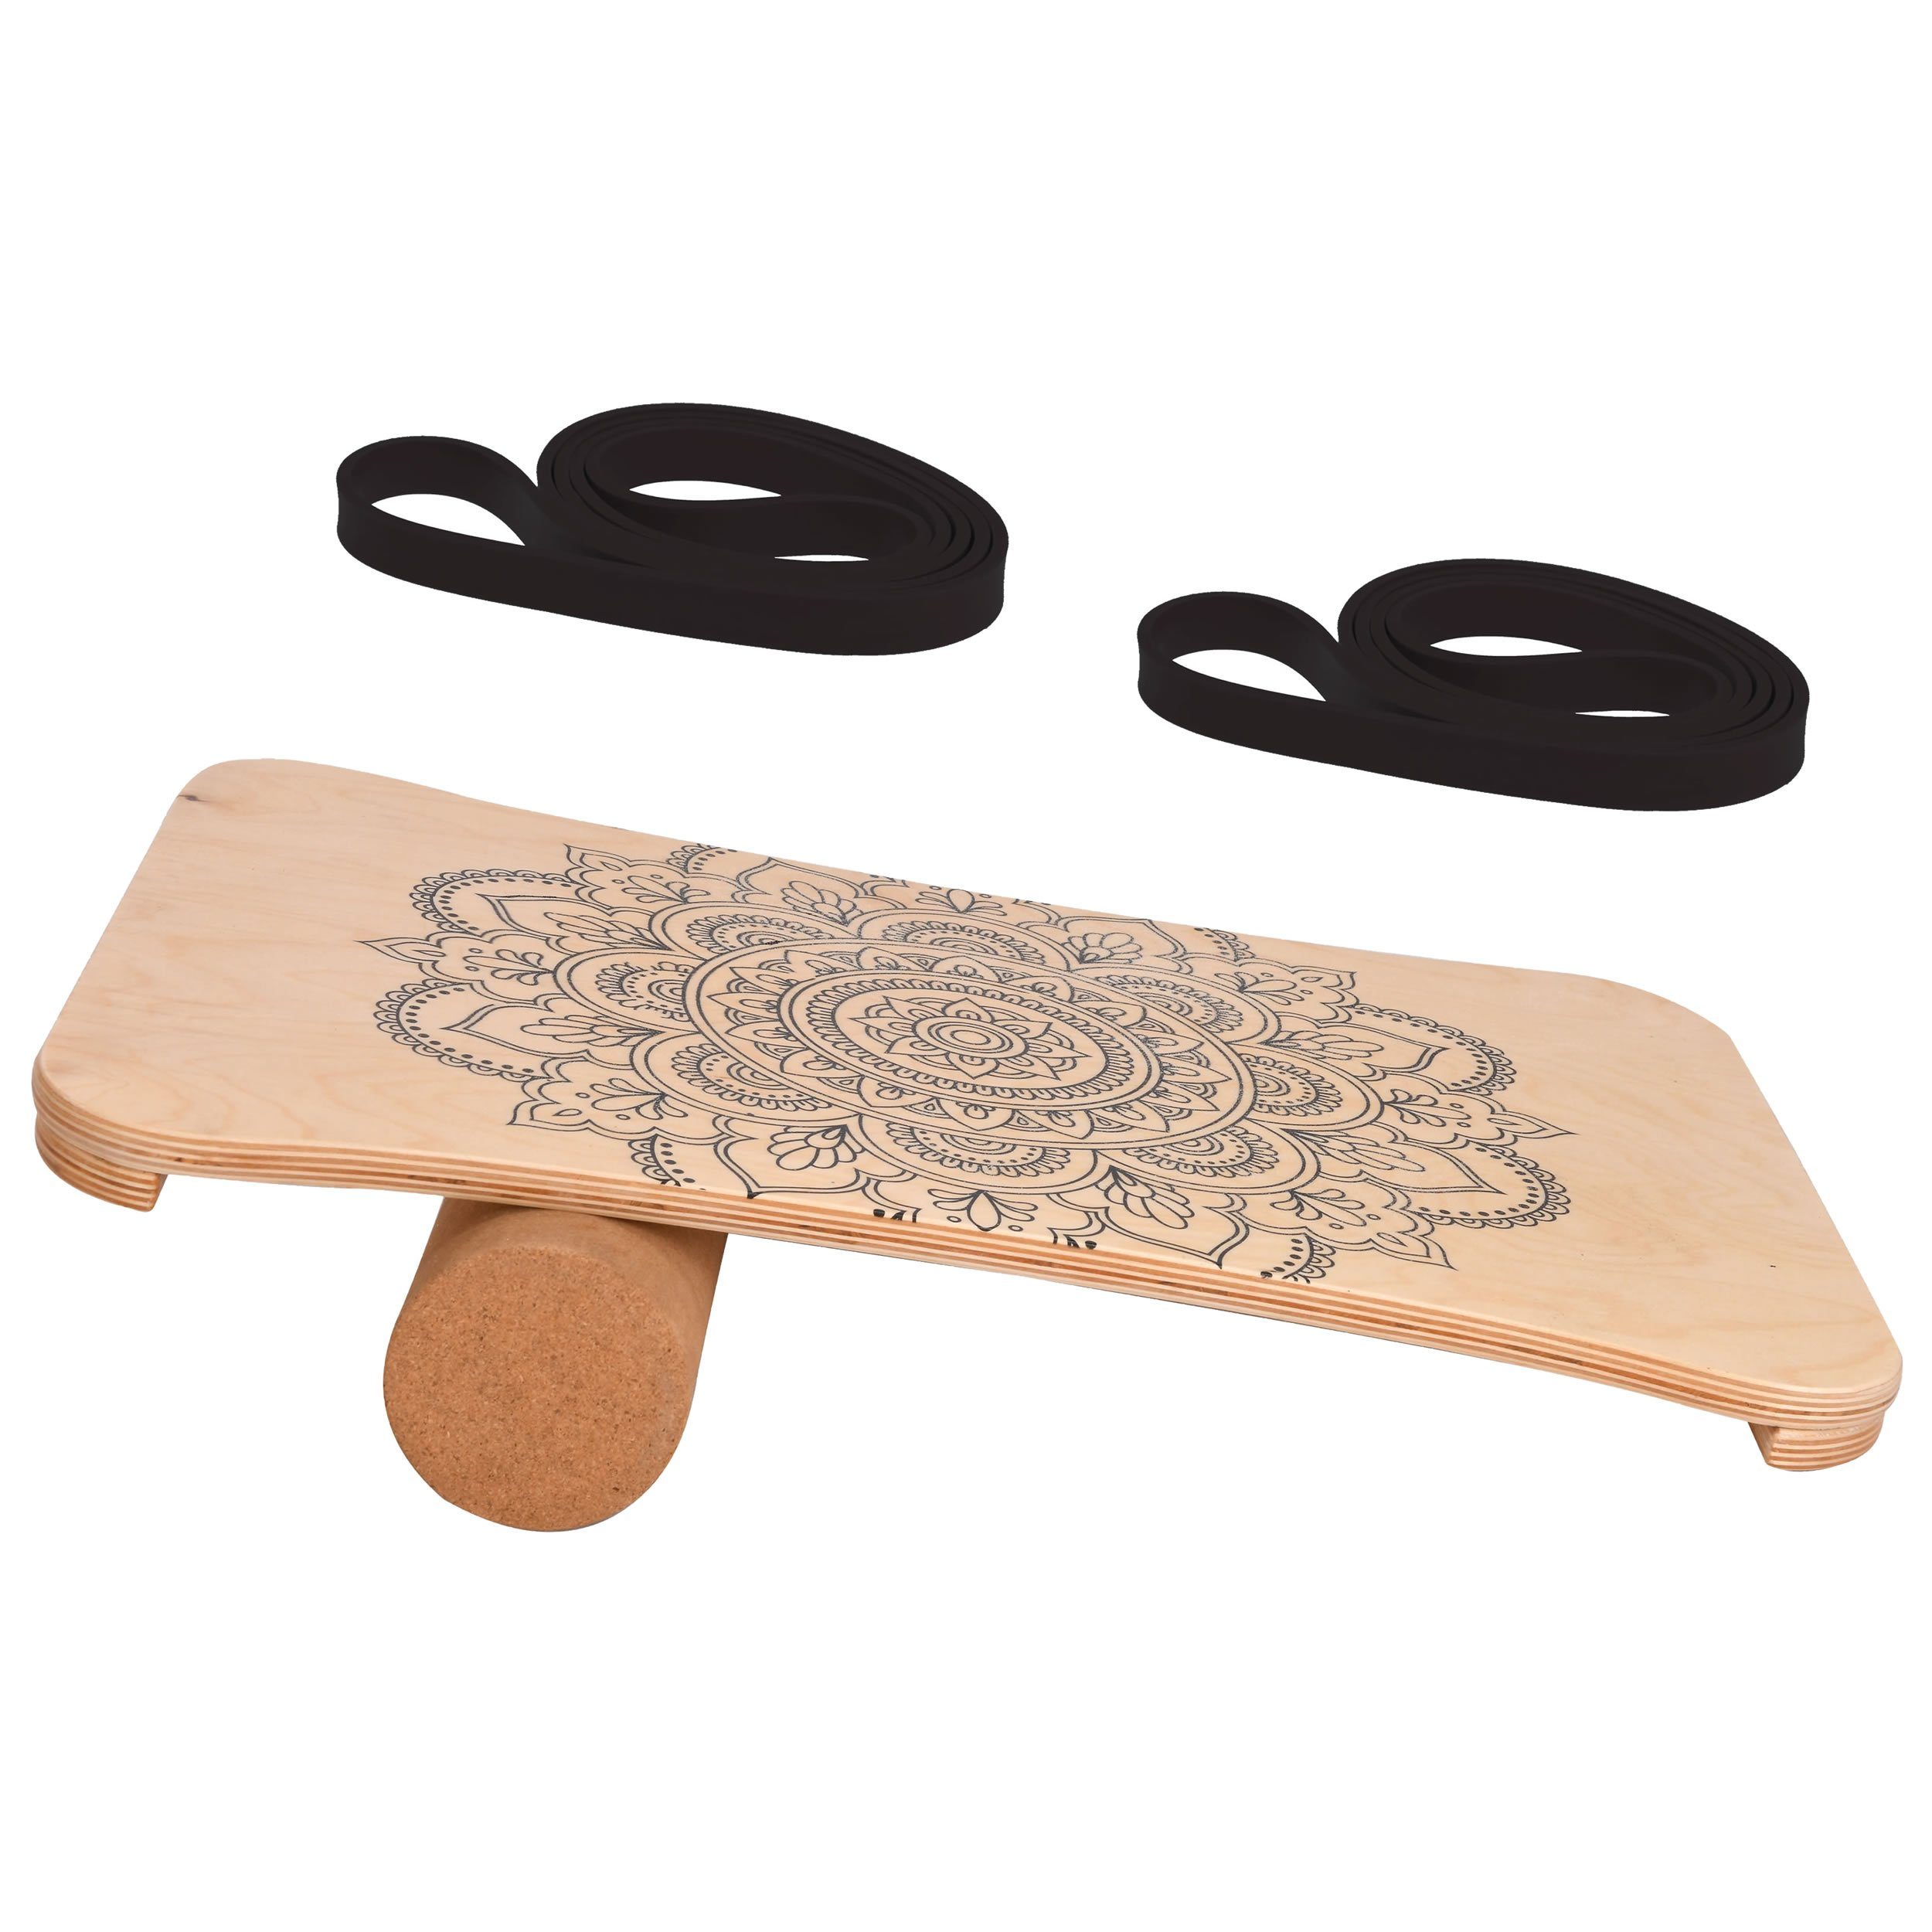 body coach Balanceboard Woodboard Balance-Board Set natürliches Material Ahorn Holz & Kork, Anti-Rutsch Gleichgewichtstrainer für Kinder, Jugendliche & Erwachsene